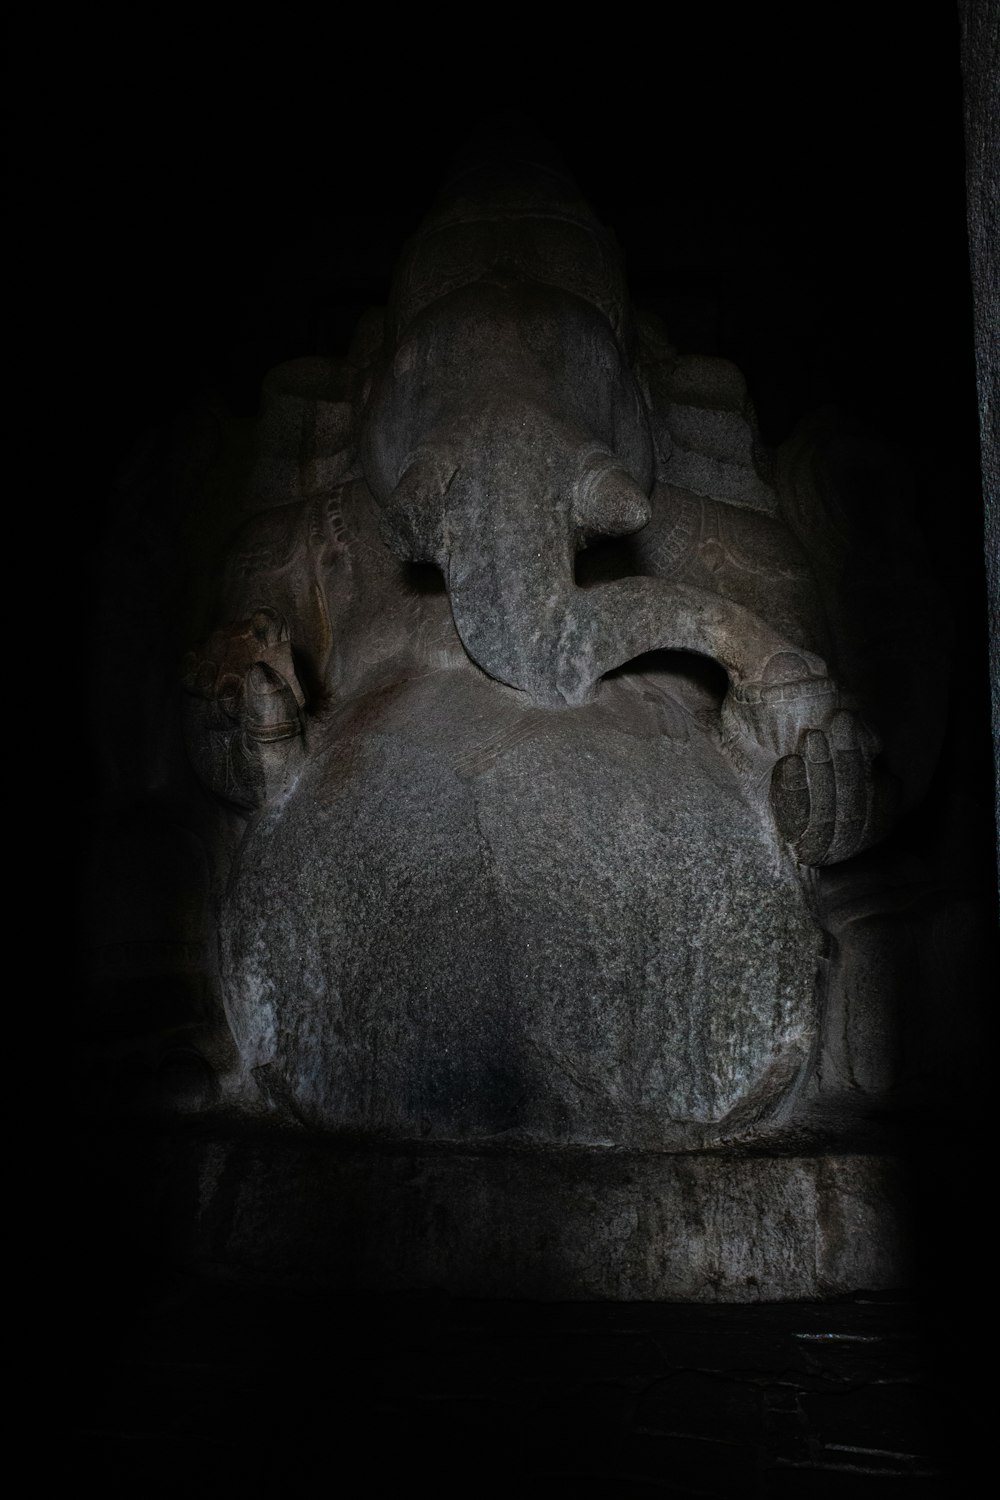 Una estatua de un elefante en una habitación oscura